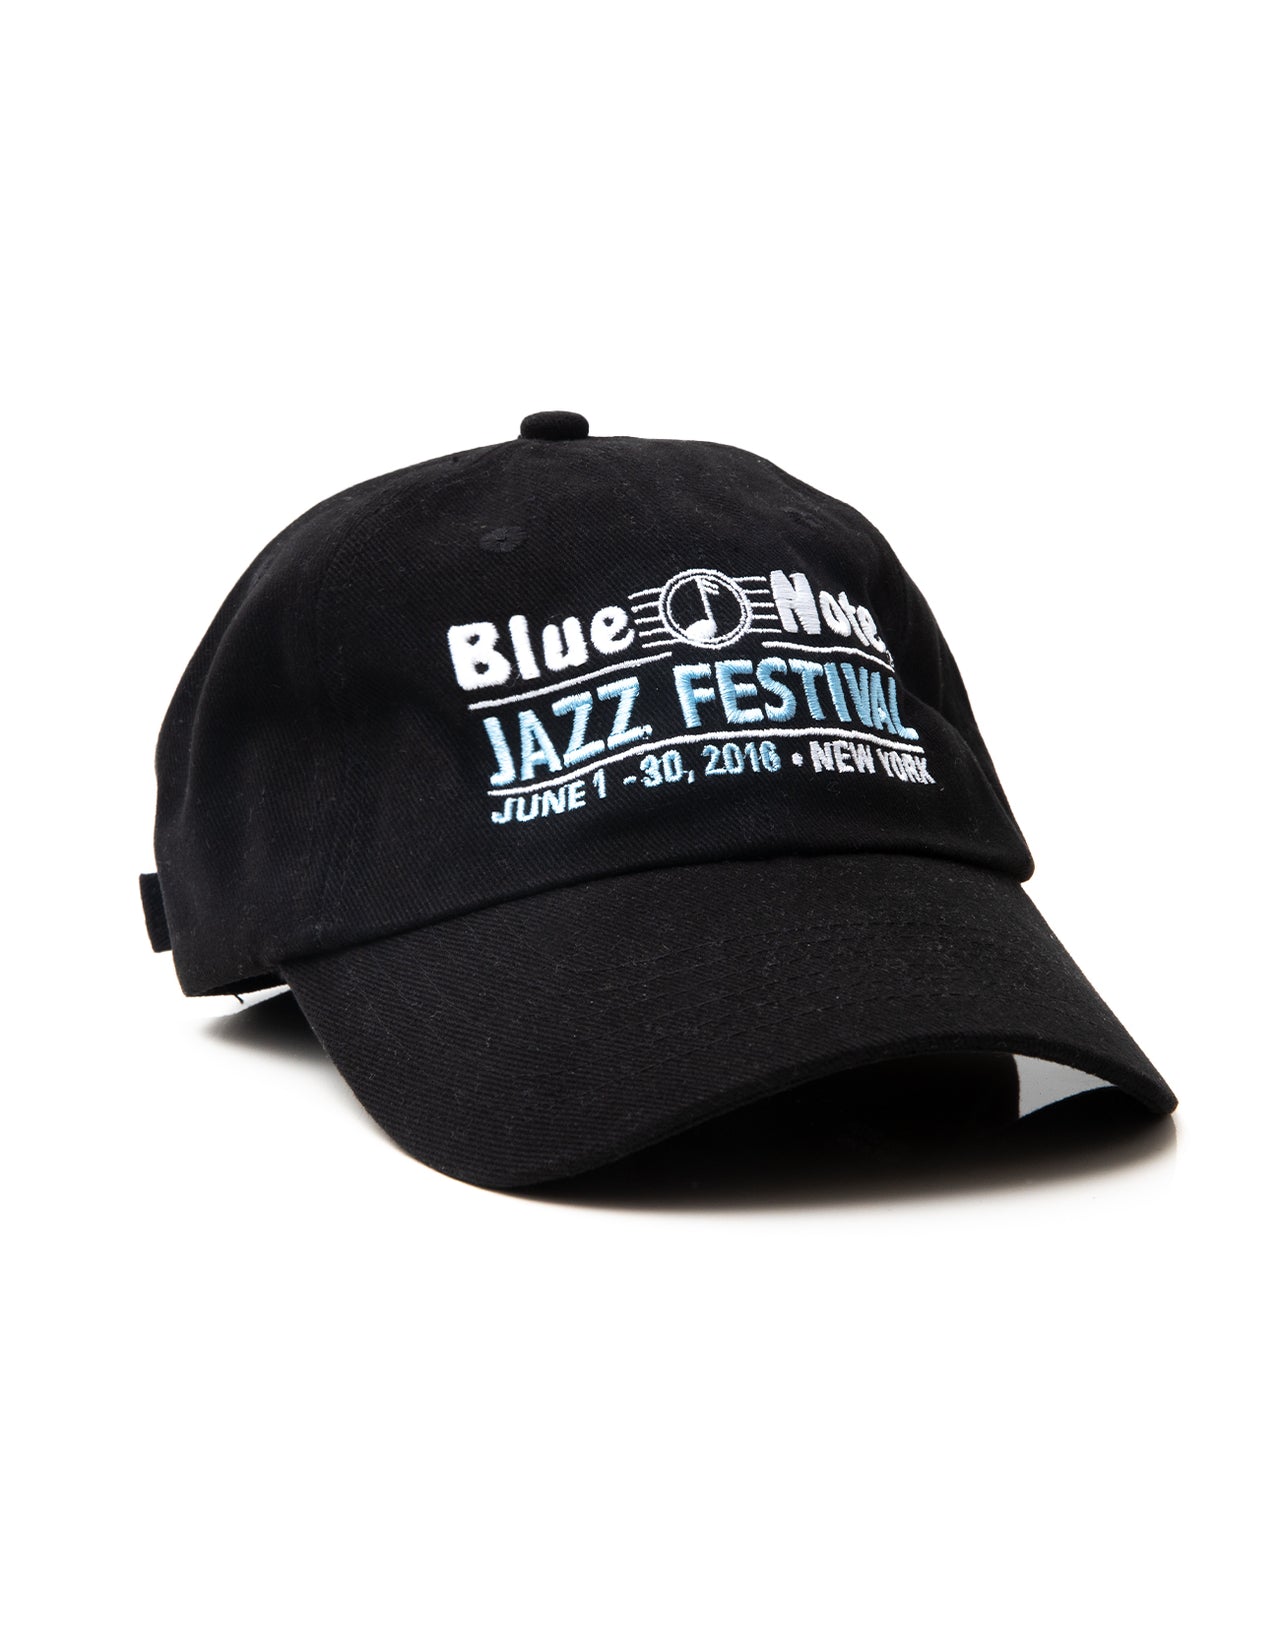 Jazz Festival 2016 Blue Note NY | Hat